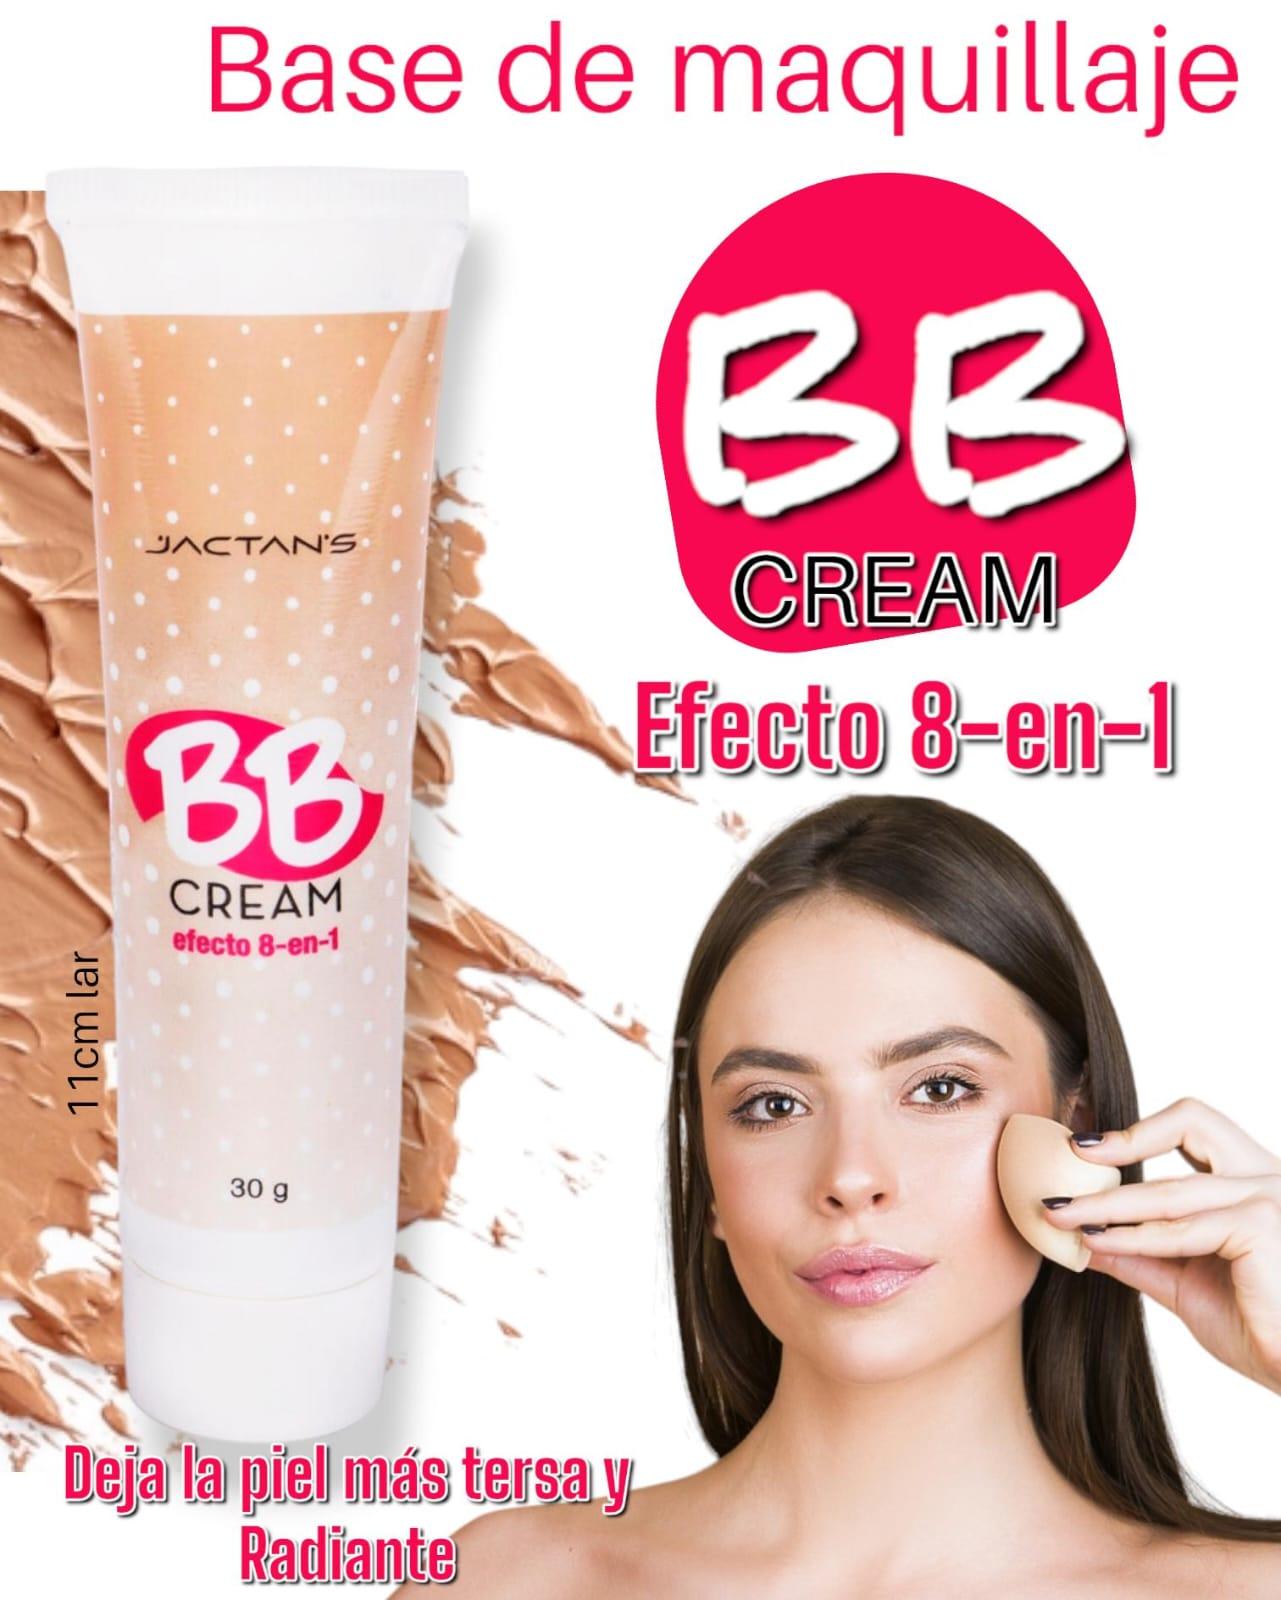 BB Cream Base de Maquillaje con exhibidor